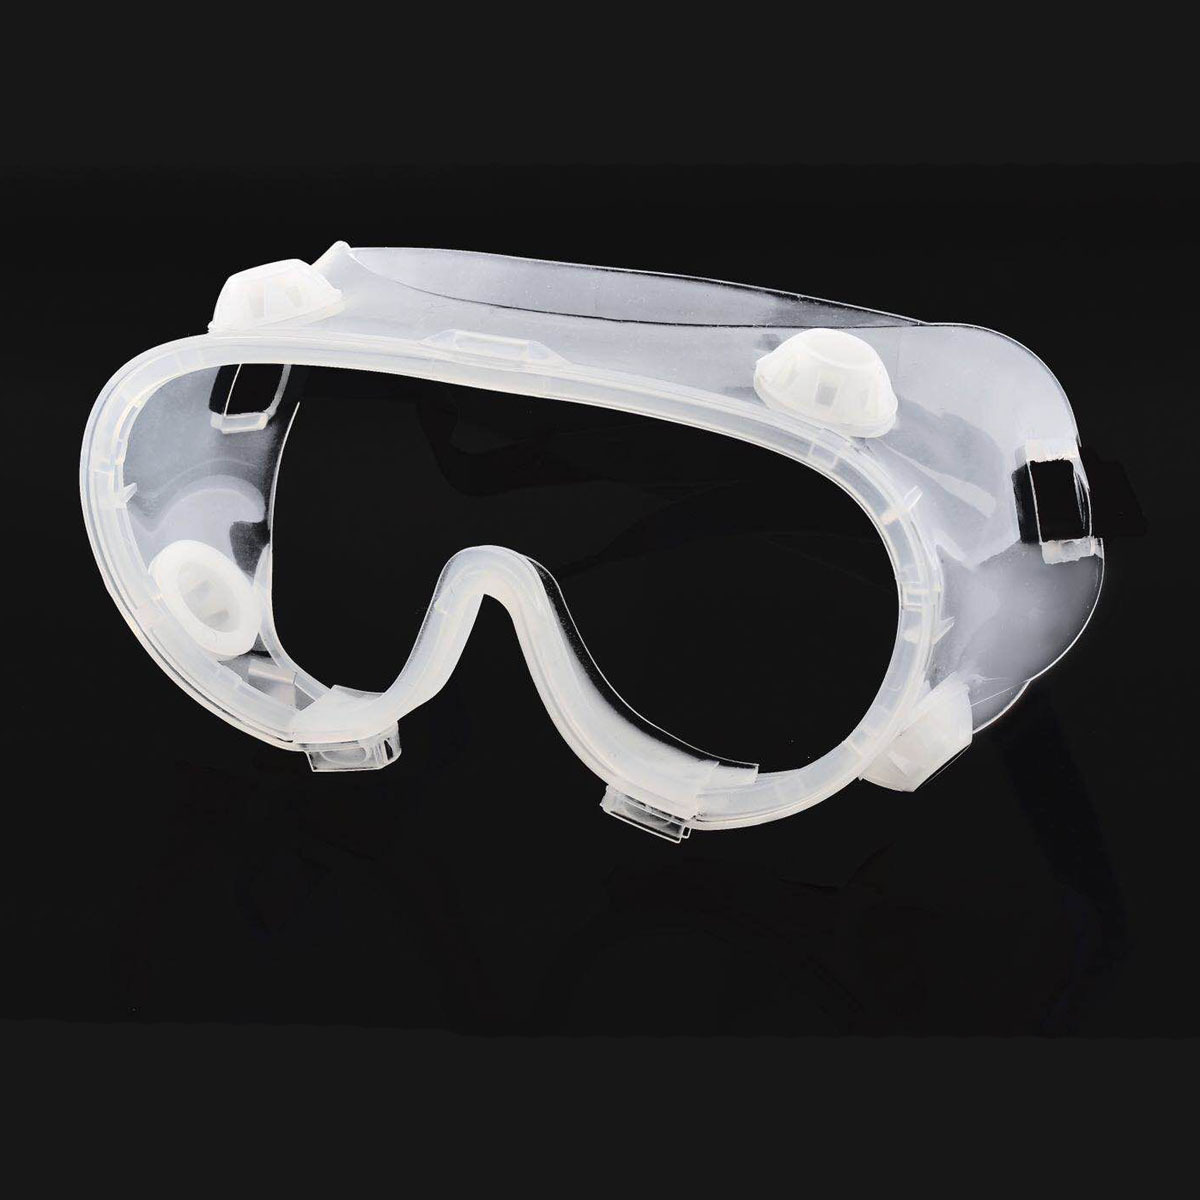 Gafas protectoras transparentes Gafas de seguridad Gafas de seguridad contra el viento a prueba de salpicaduras para la investigación industrial